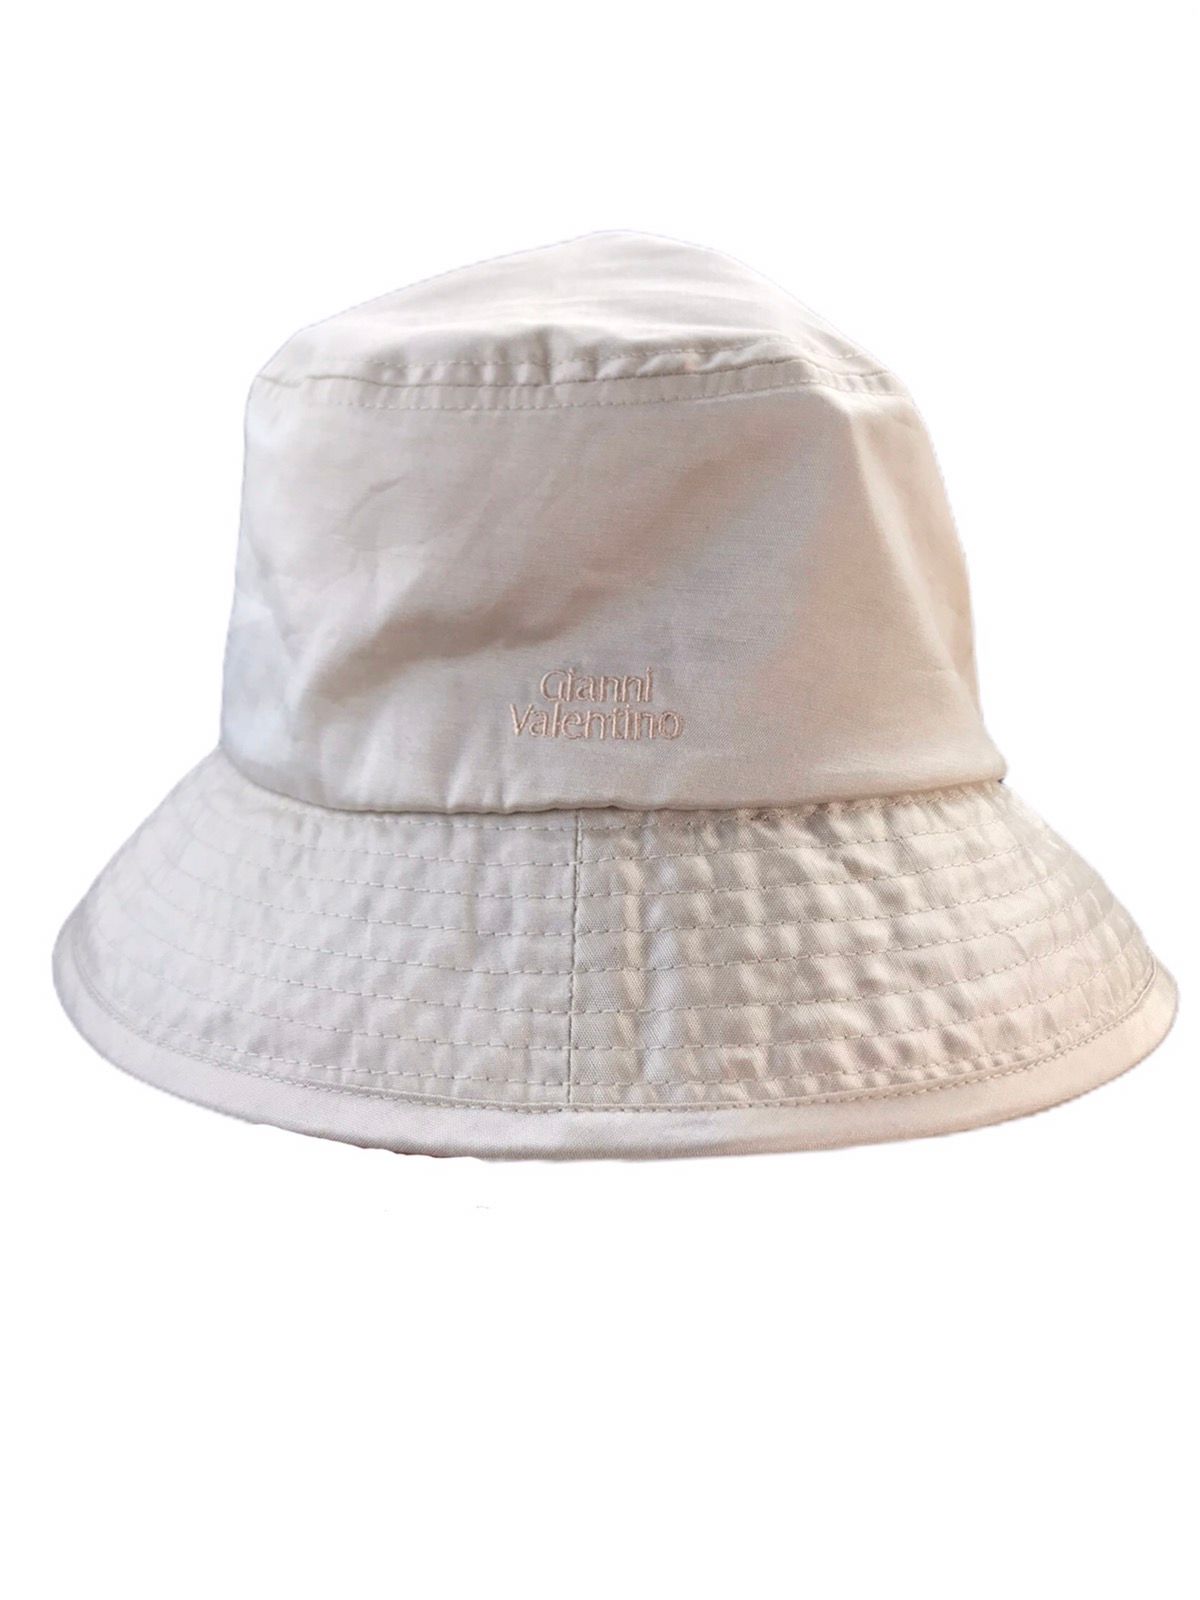 Vintage Nylon Gianni Valentino Bucket Hat - 1